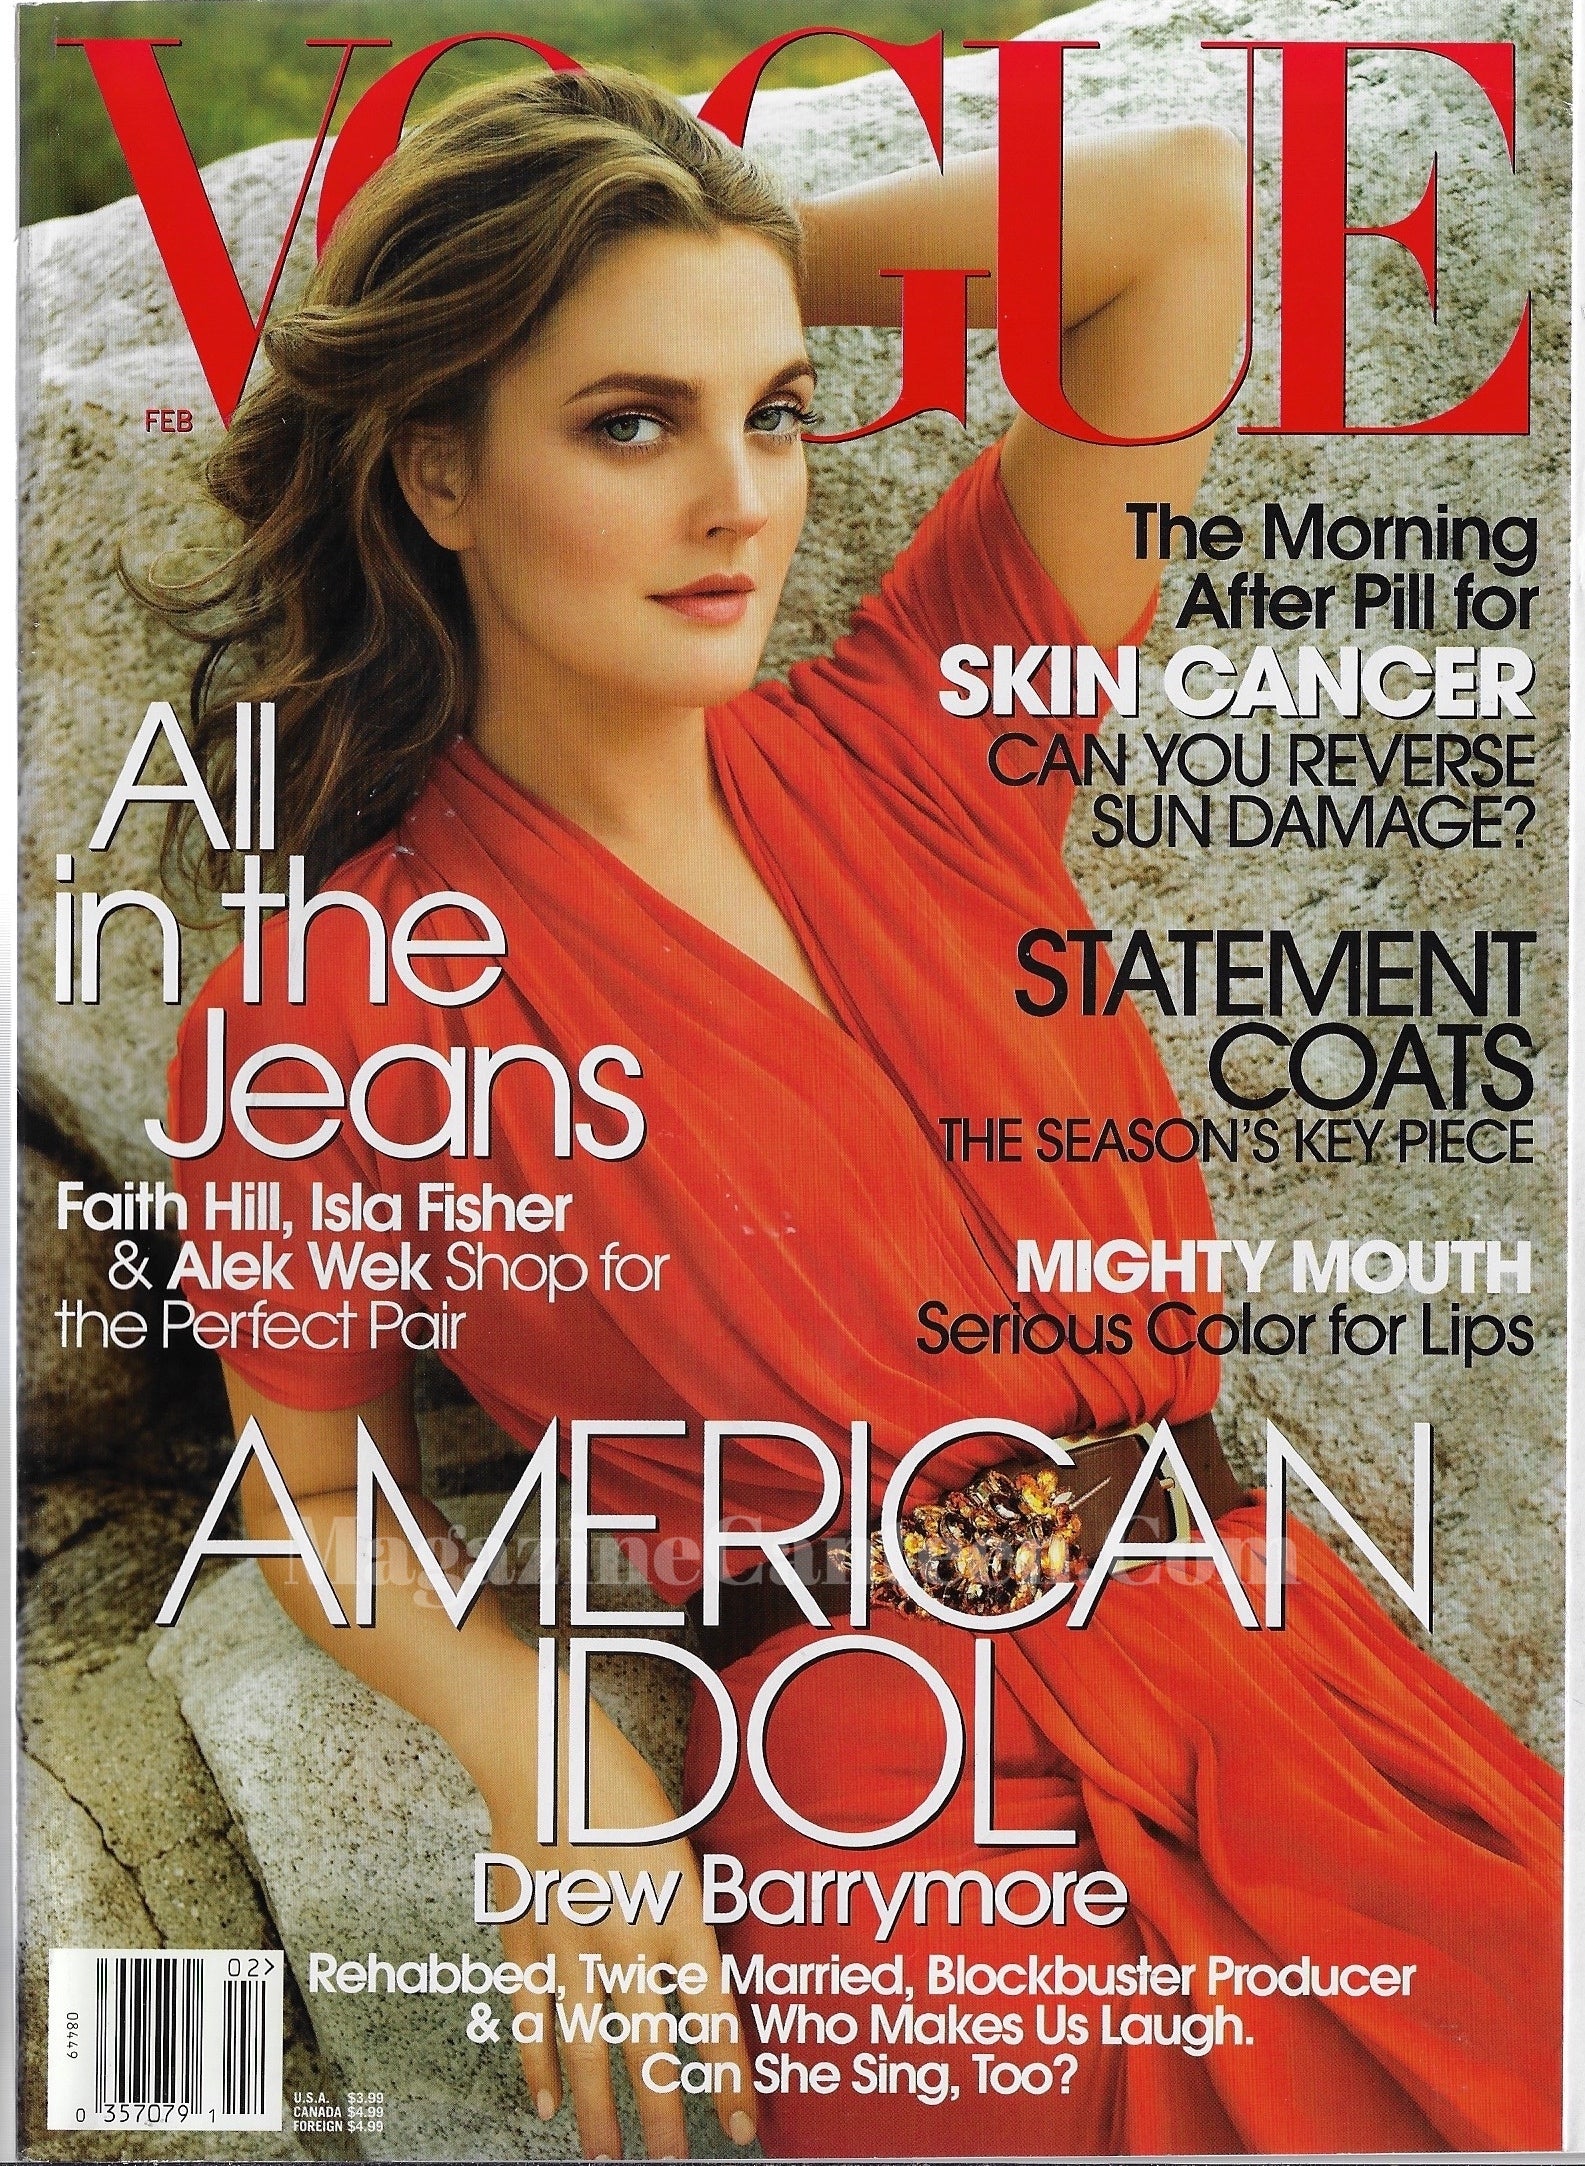 Vogue USA Magazine February 2006 - Drew Barrymore